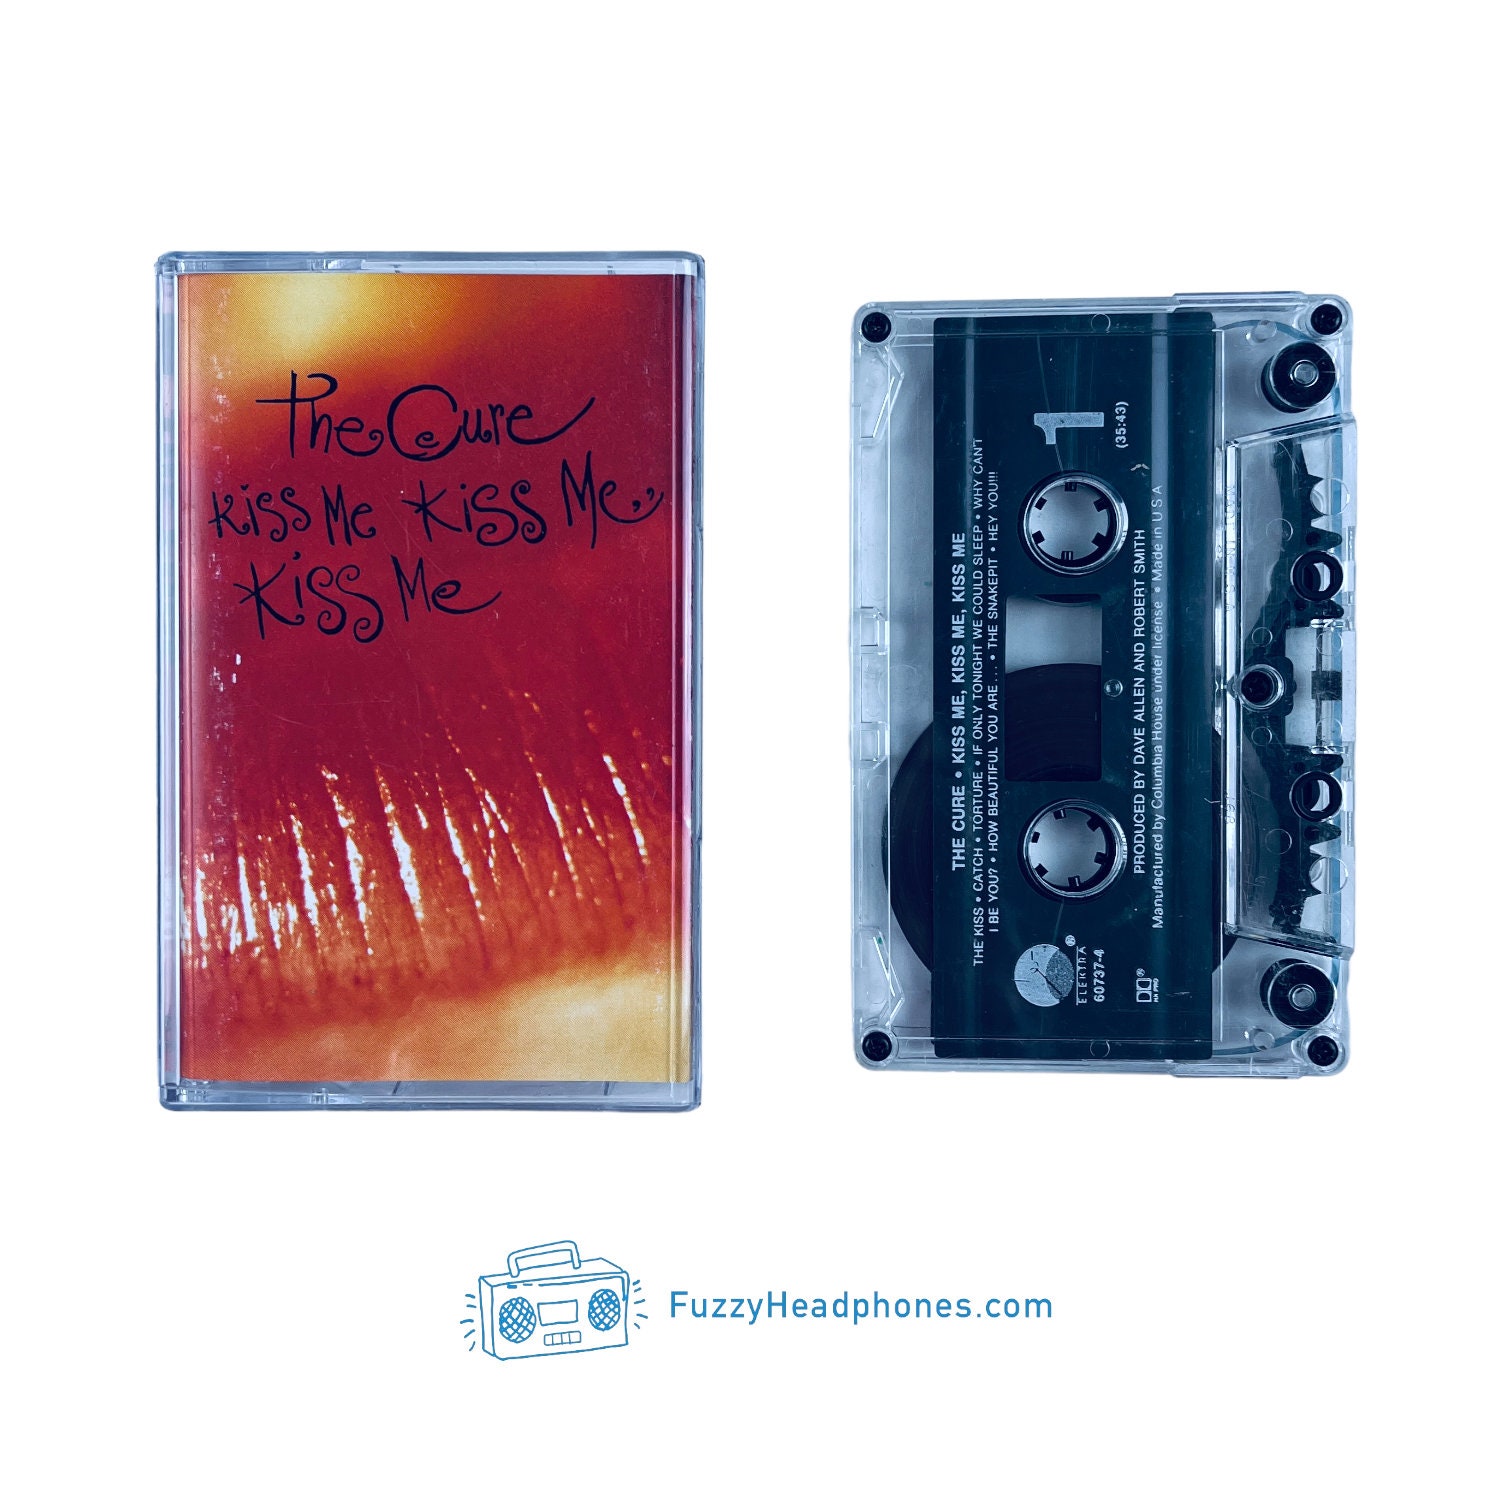 The Cure Kiss Me Kiss Me Kiss Me Cassette Tape 1987 Etsy